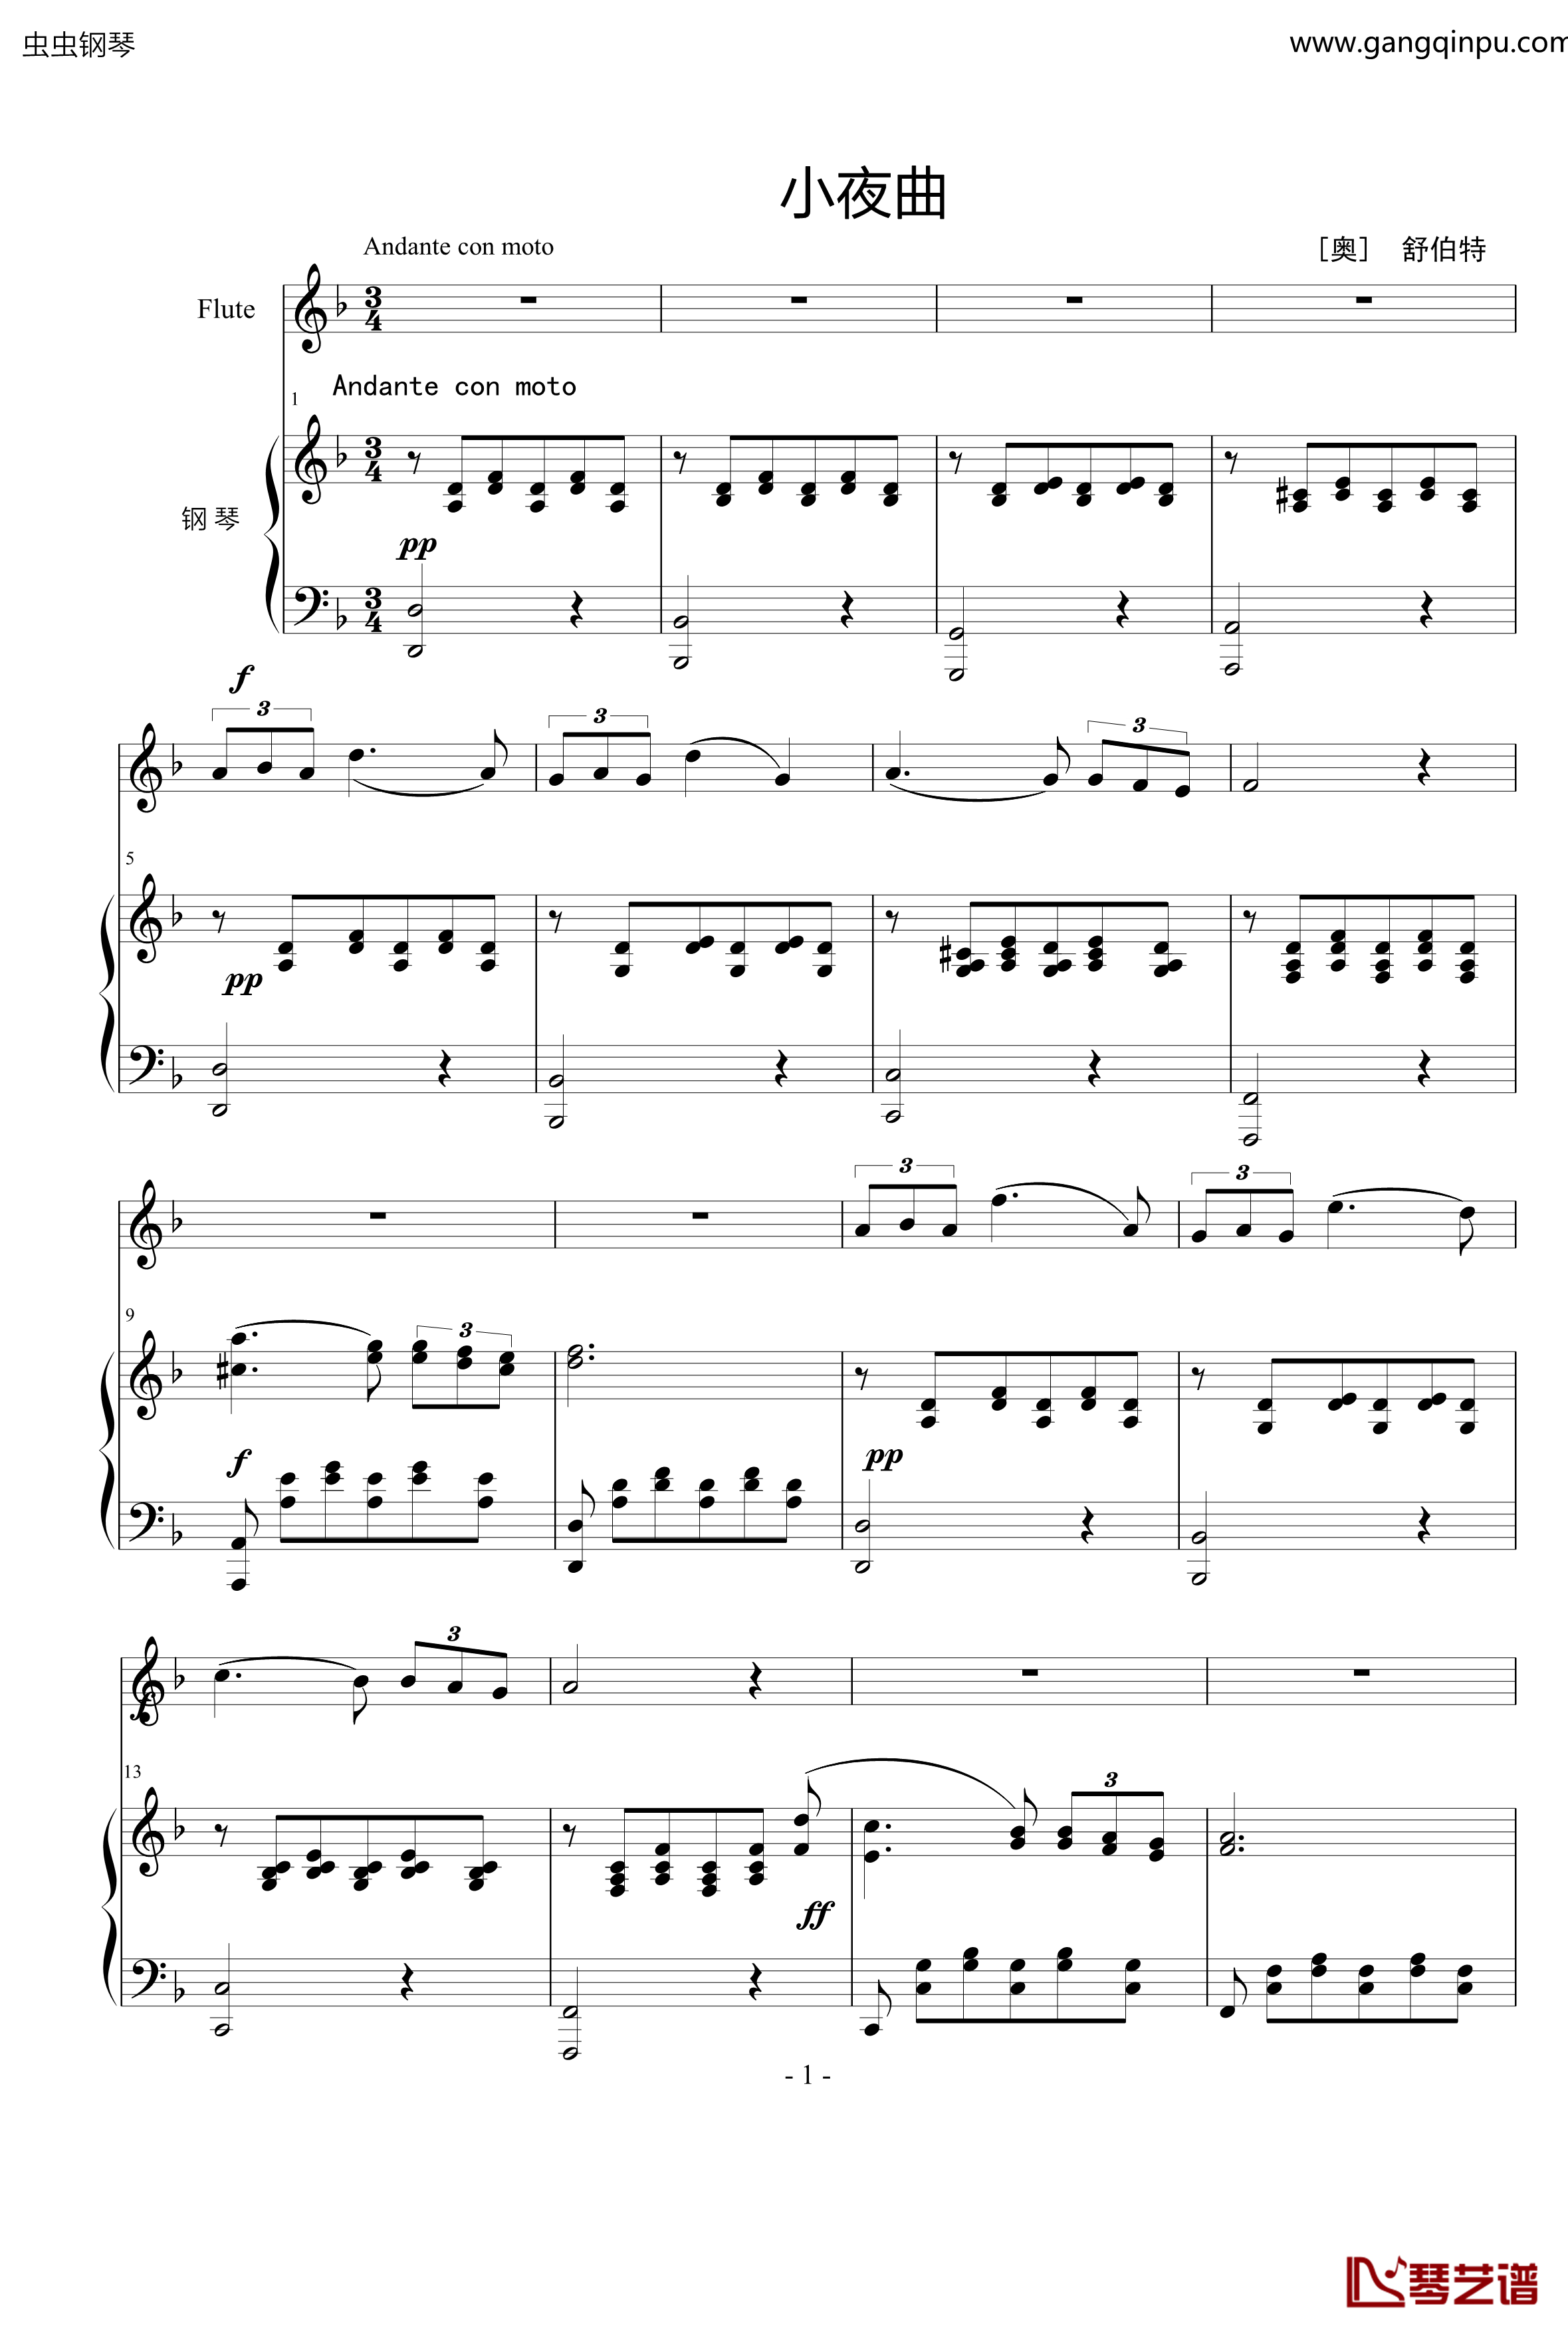 小夜曲钢琴谱-ove 格式长笛笛钢琴伴奏-舒伯特